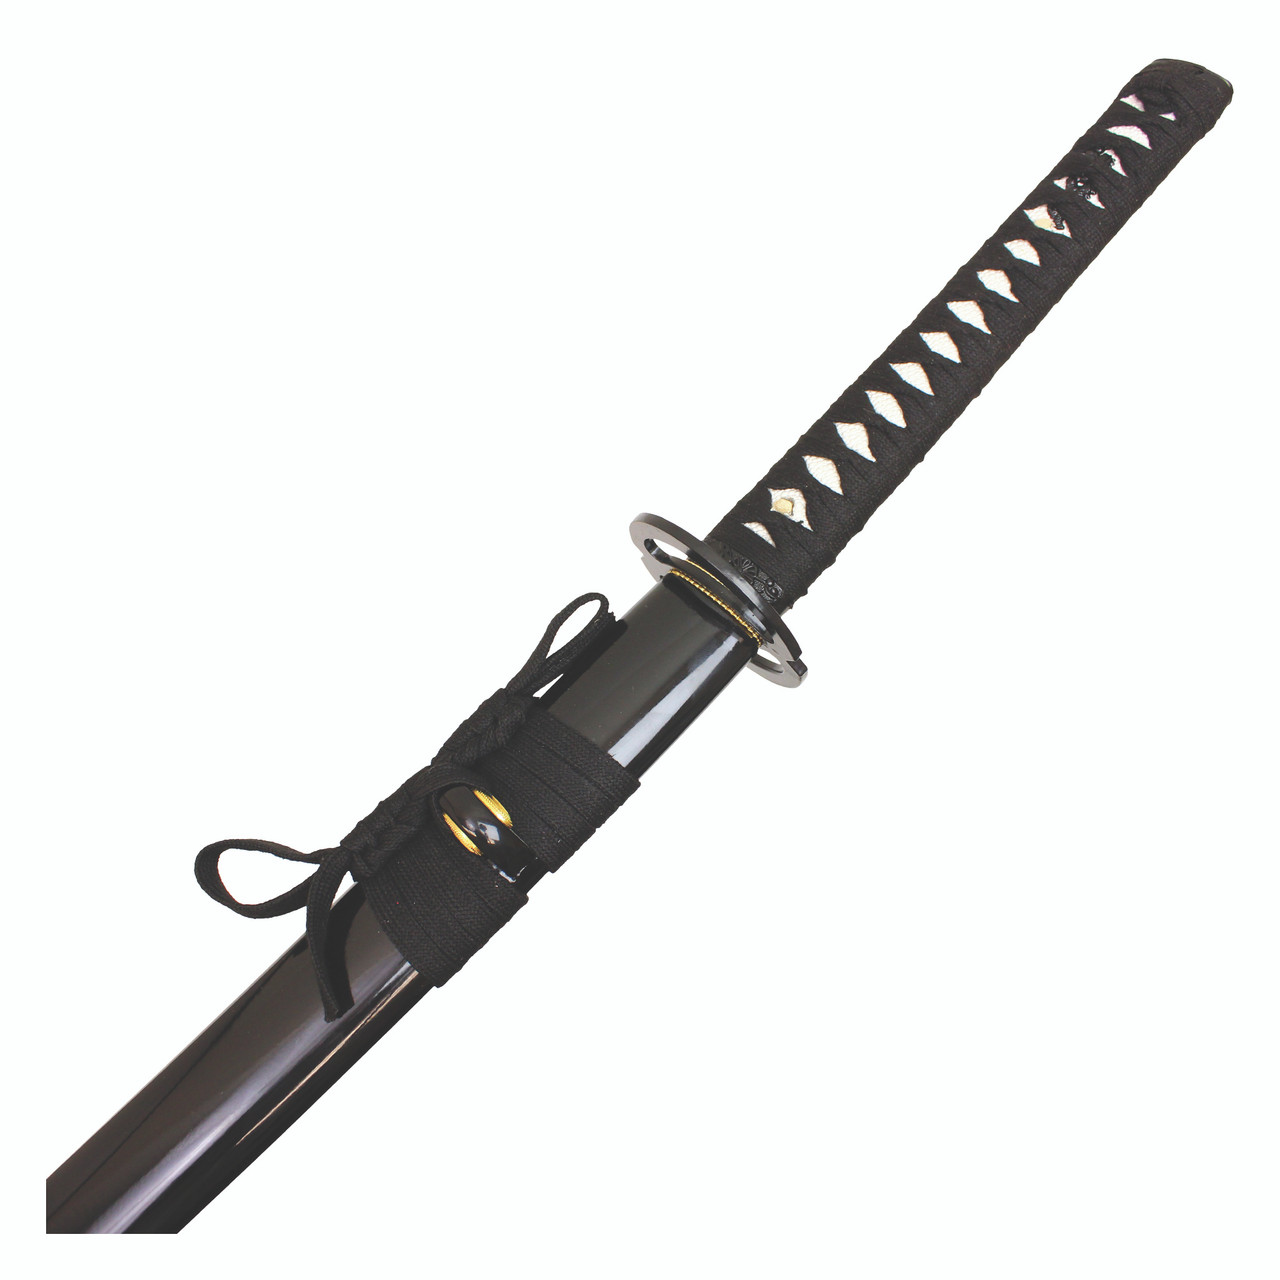 41“ SHARP Blade Katana Handmade Samurai Sword w/ Musashi Tsuba & Scab - Green